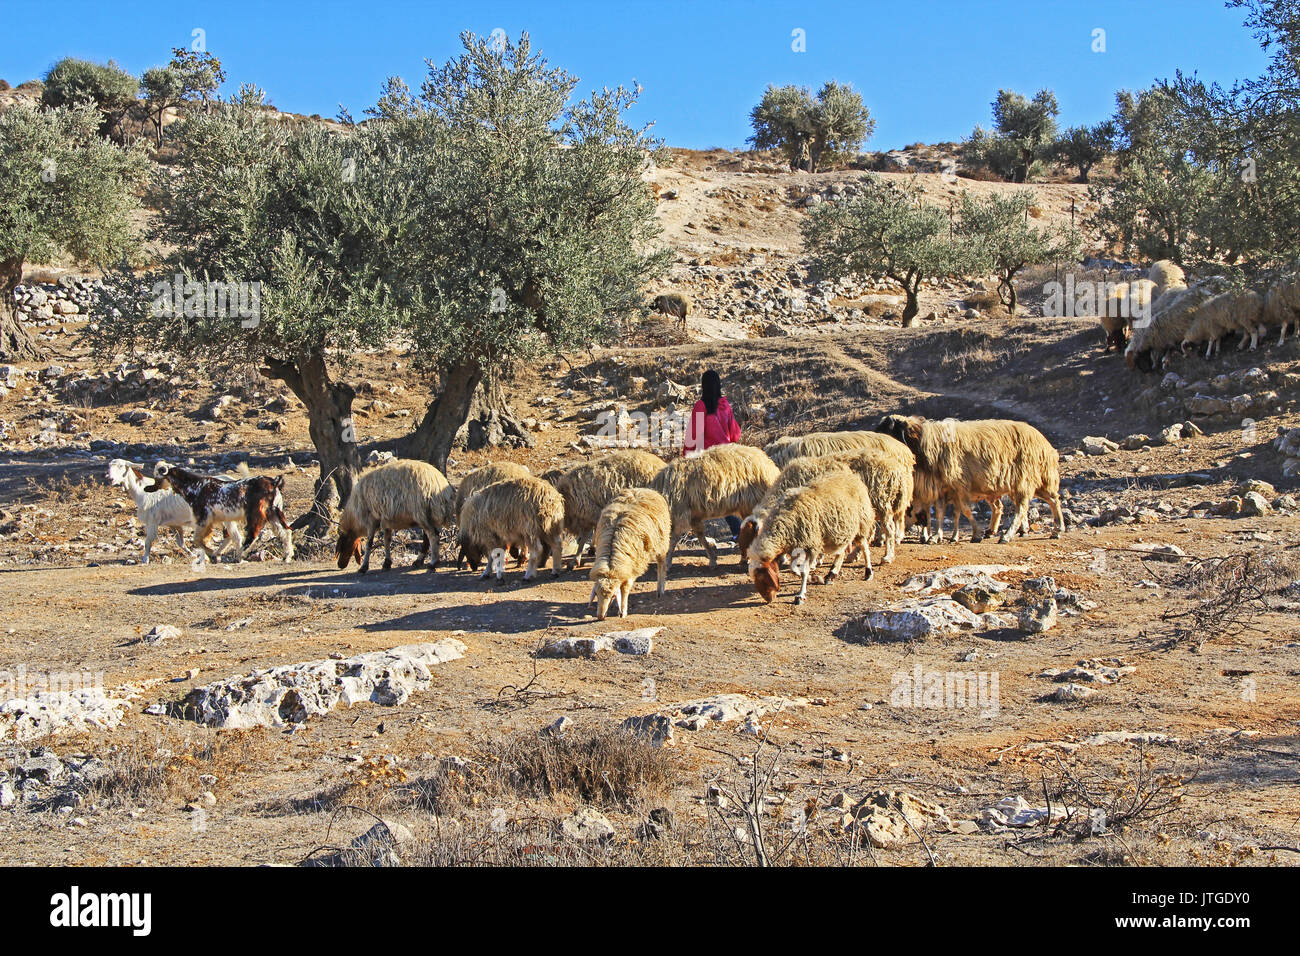 JERUSALEM, Israel - 25. OKTOBER 2013: Schäferin ihre Schafe in einem Olivenhain zwischen Jerusalem und Bethlehem, Israel neigt. Stockfoto